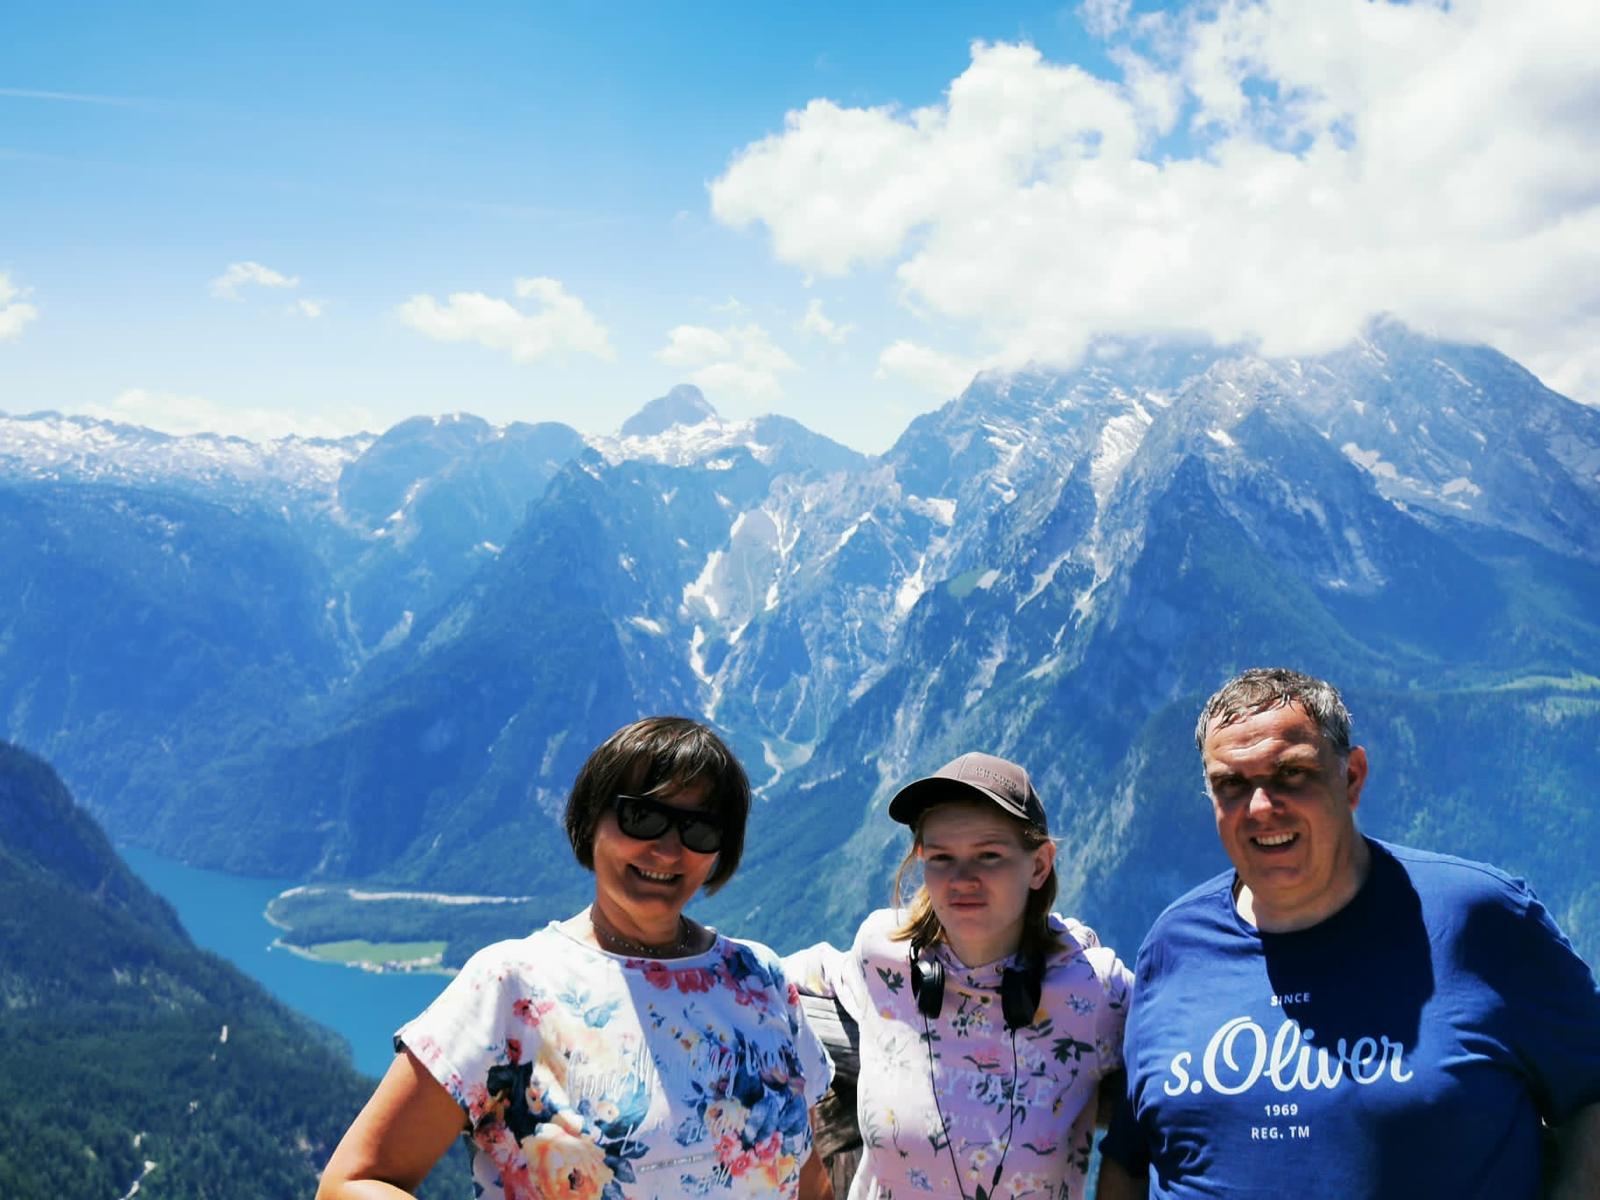 Das Bild zeigt drei Personen vor einem Bergpanorama. Auf den Gipfeln sieht man noch Schneereste und im Tal einen blauen See.